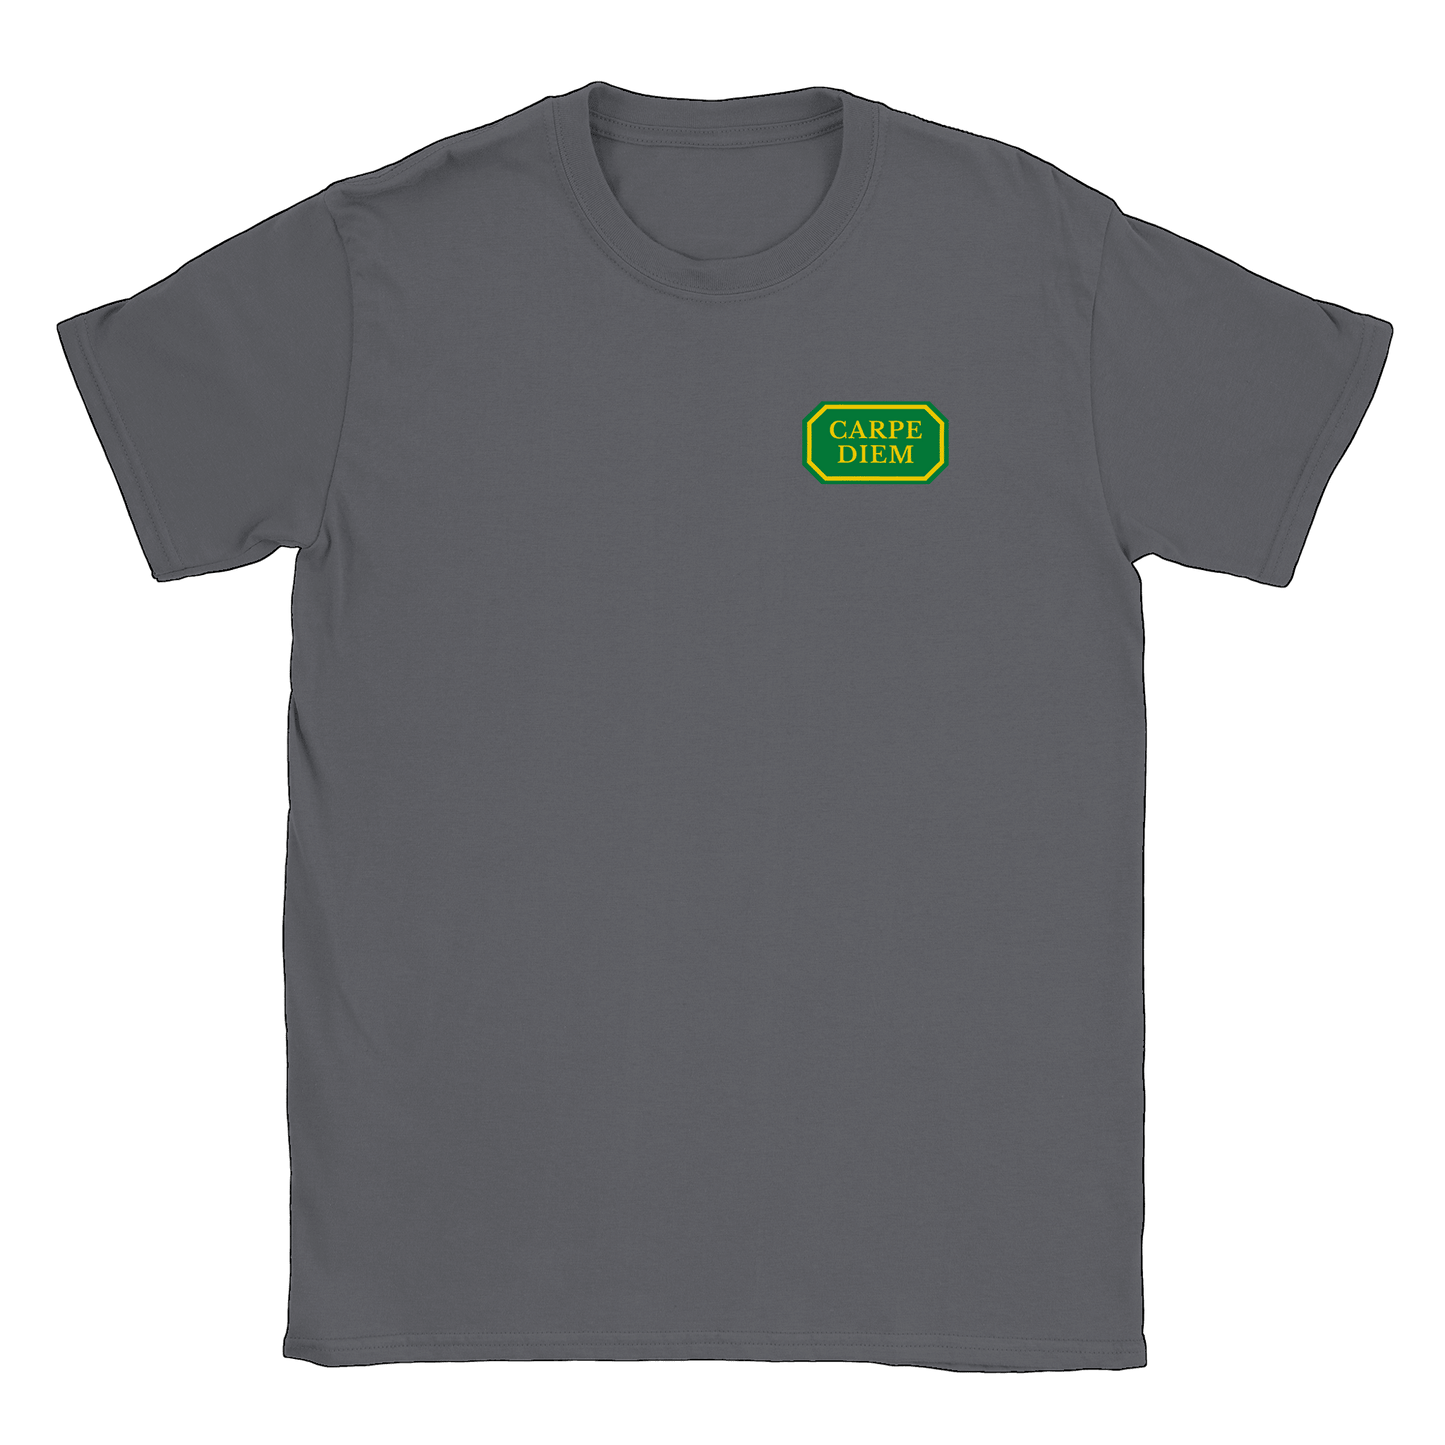 Carpe Diem liten - T-shirt Charcoal